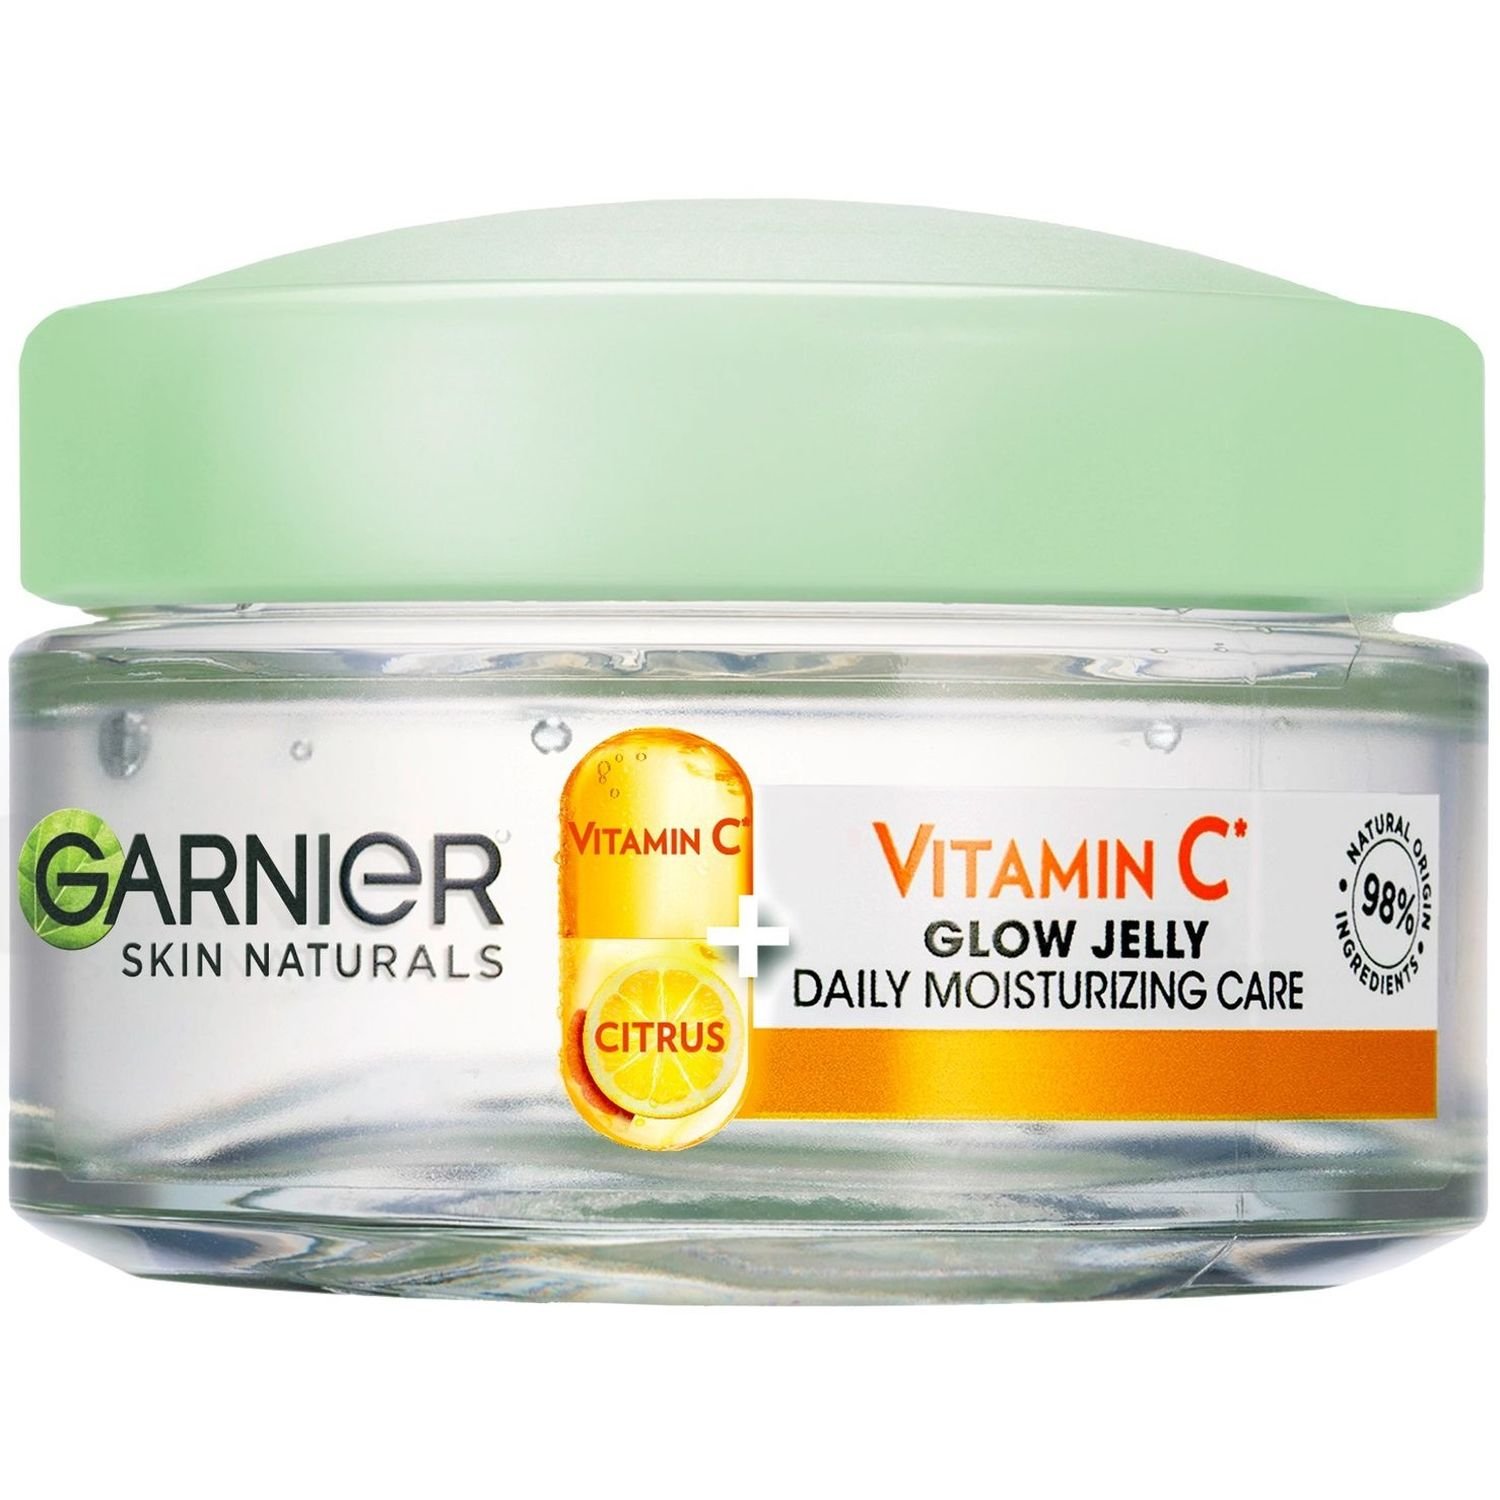 Увлажняющий гель Garnier Skin Naturals с витамином С, 50 мл - фото 1